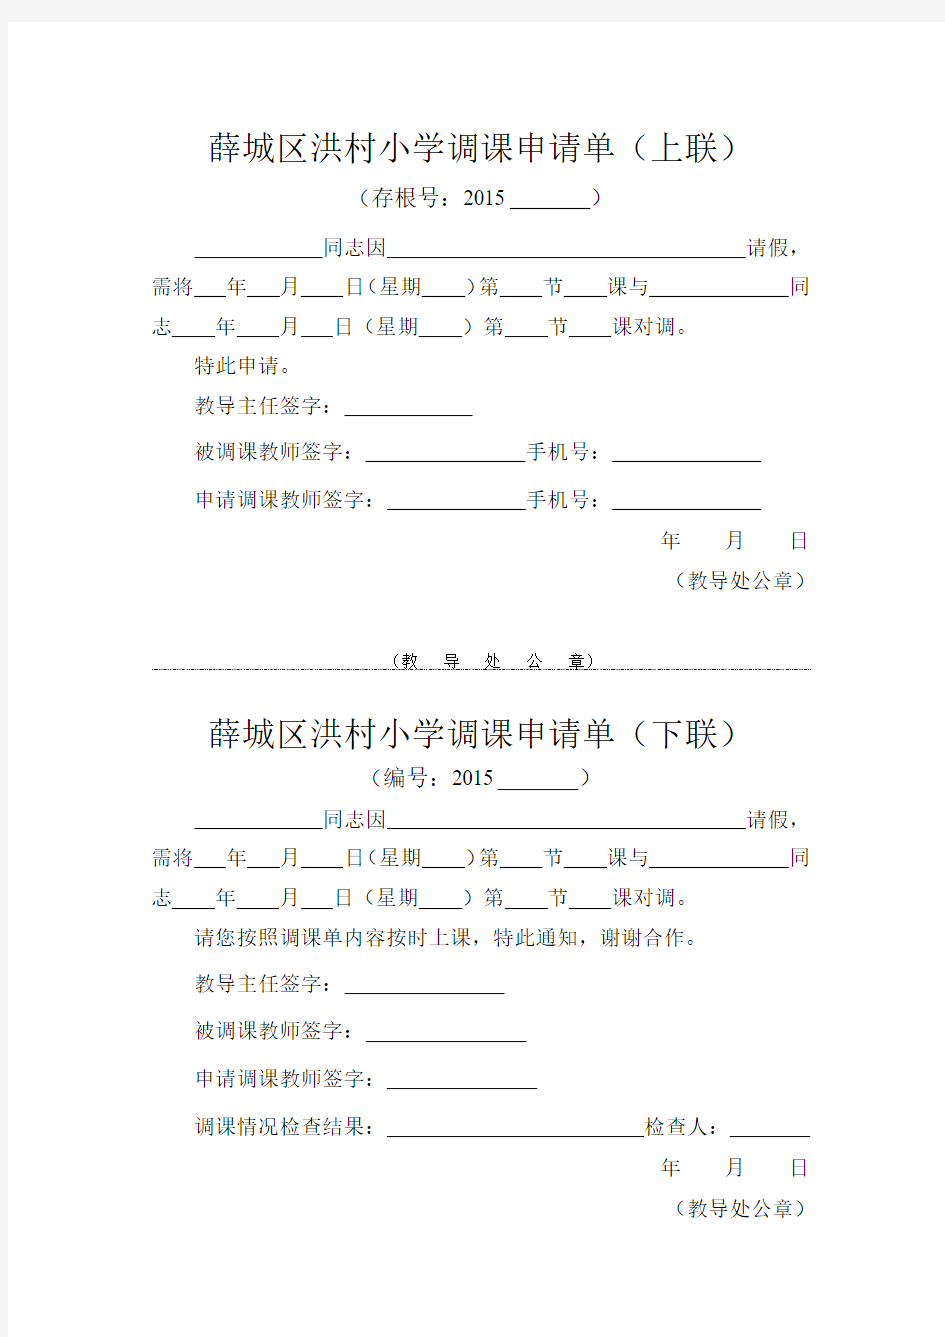 薛城区洪村小学调课申请单(2014版)